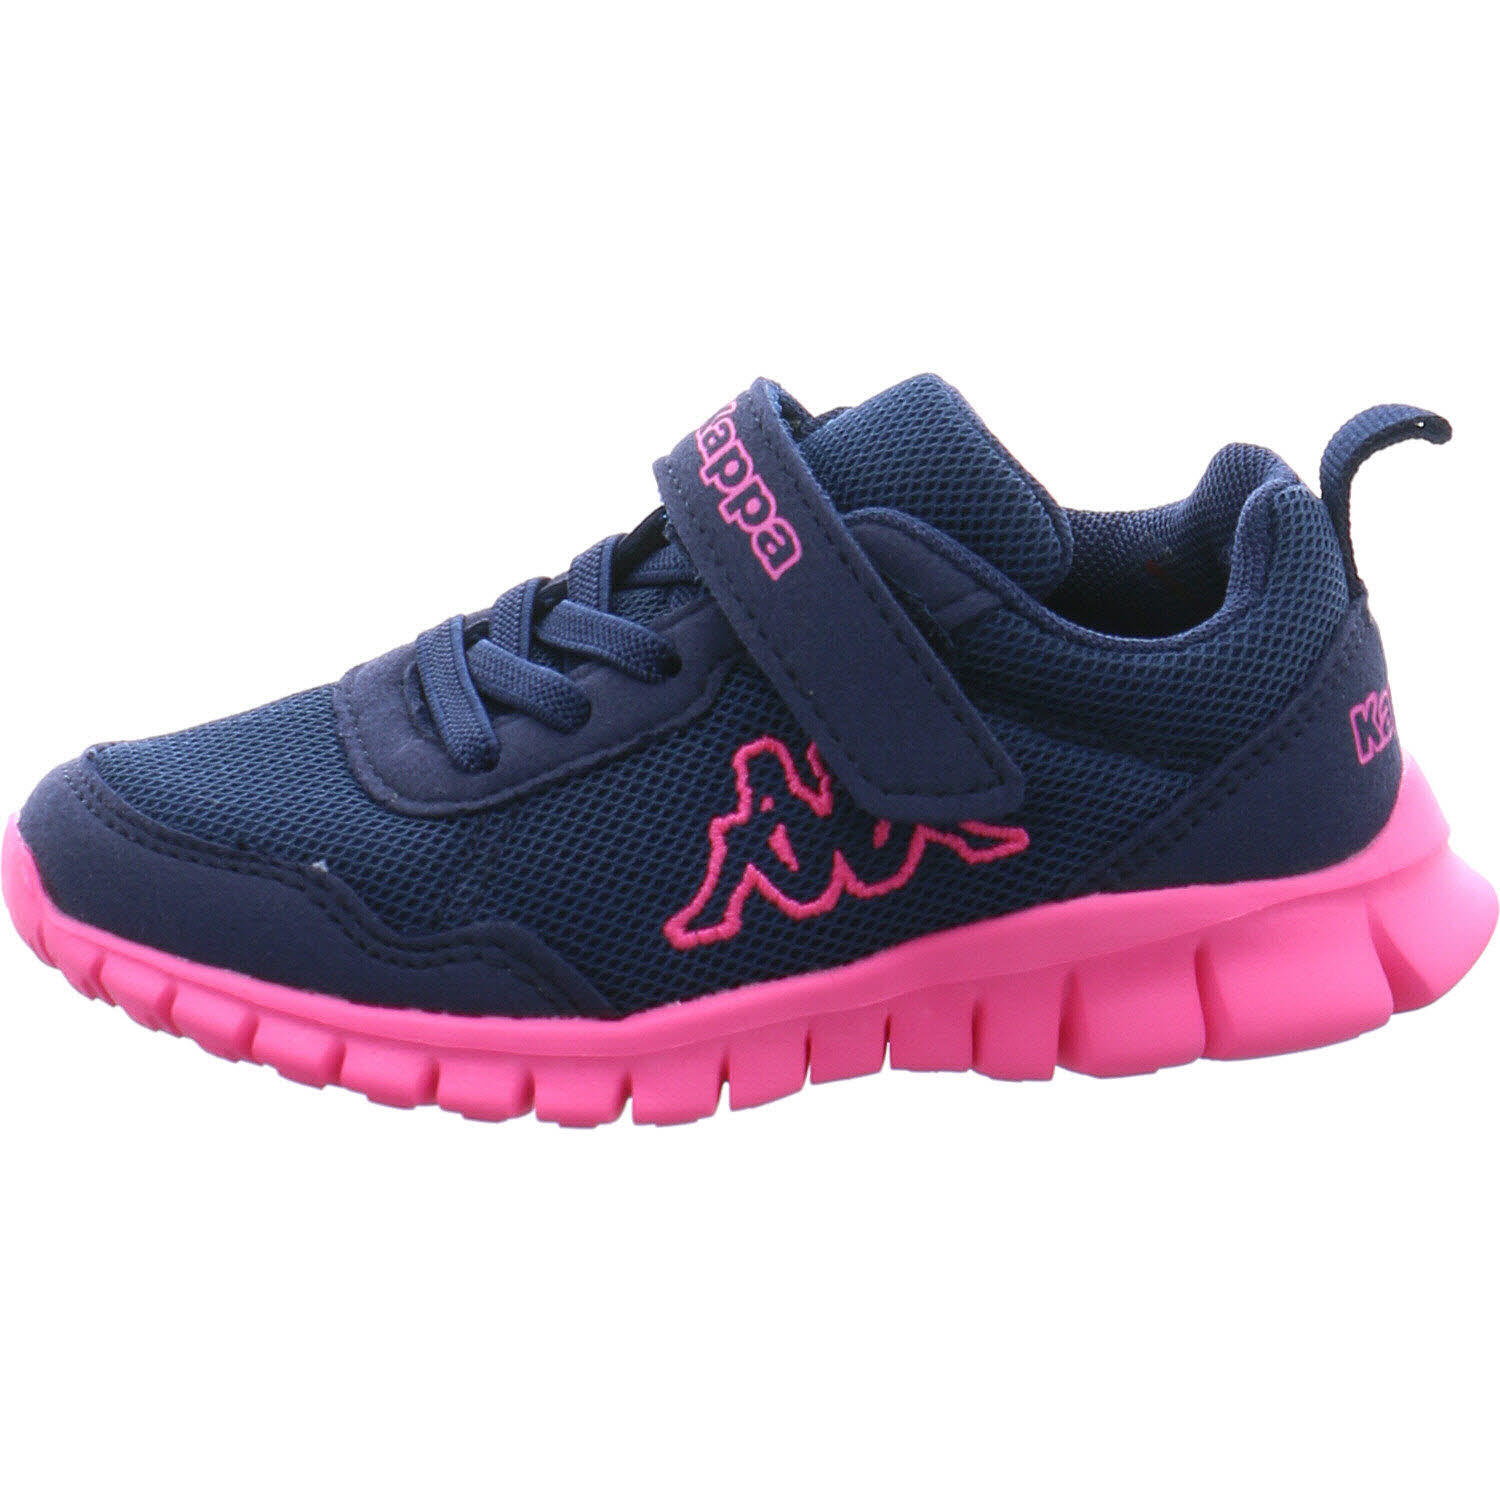 BC Stylecode: Sneaker | in für 260982 Mädchen Kappa VALDIS blau/pink Shoes P&P low BCK K